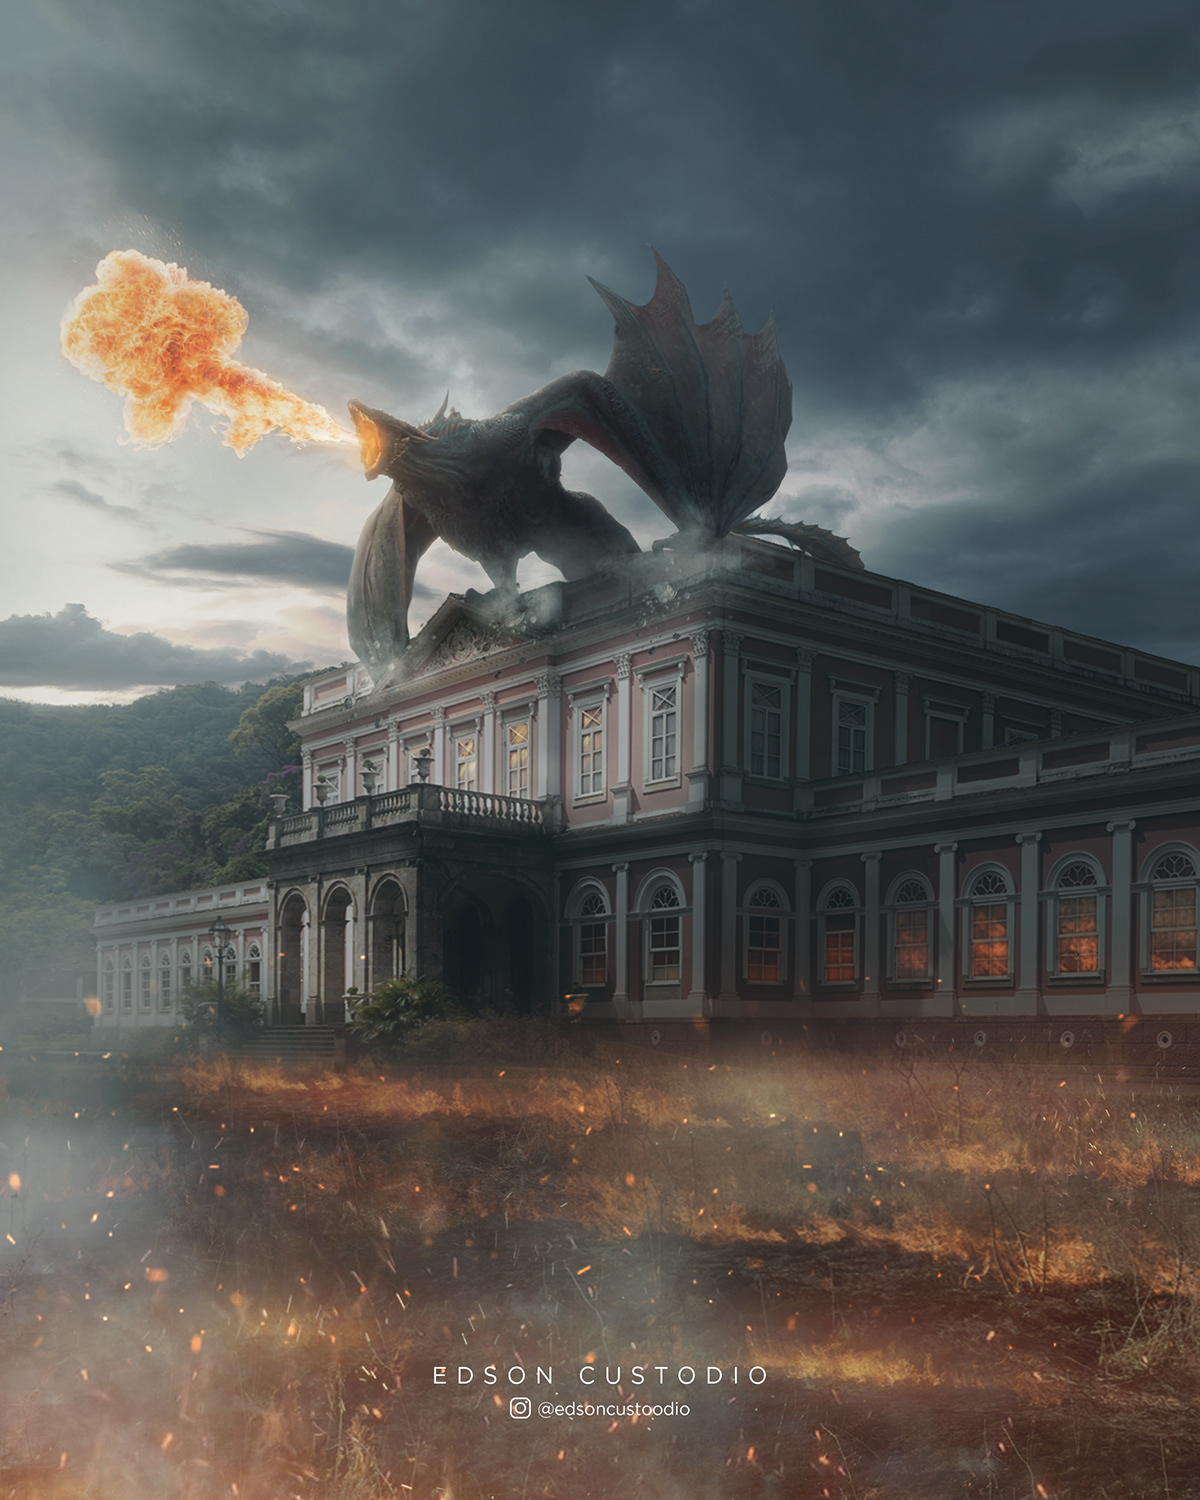 Petropolis Game of Thrones drogon got photoshop manipulation edição Brasil daenerys fire